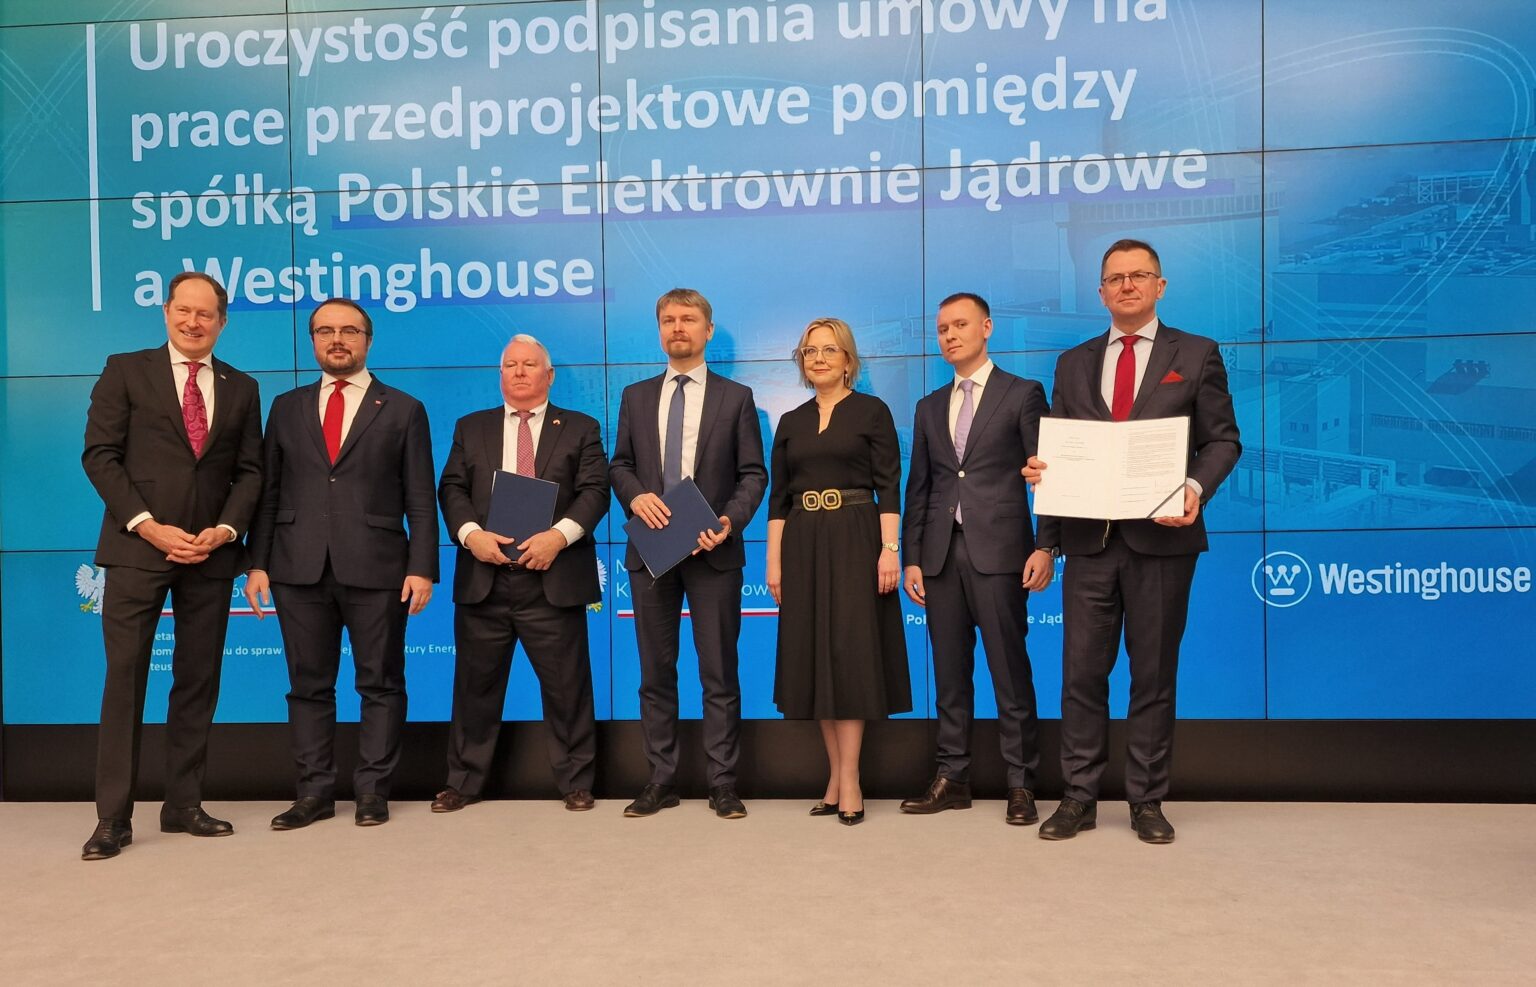 Podpisanie-umowy-przedprojektowej-Polskie-Elektrownie-Jadrowej-Westinghouse-1536×987